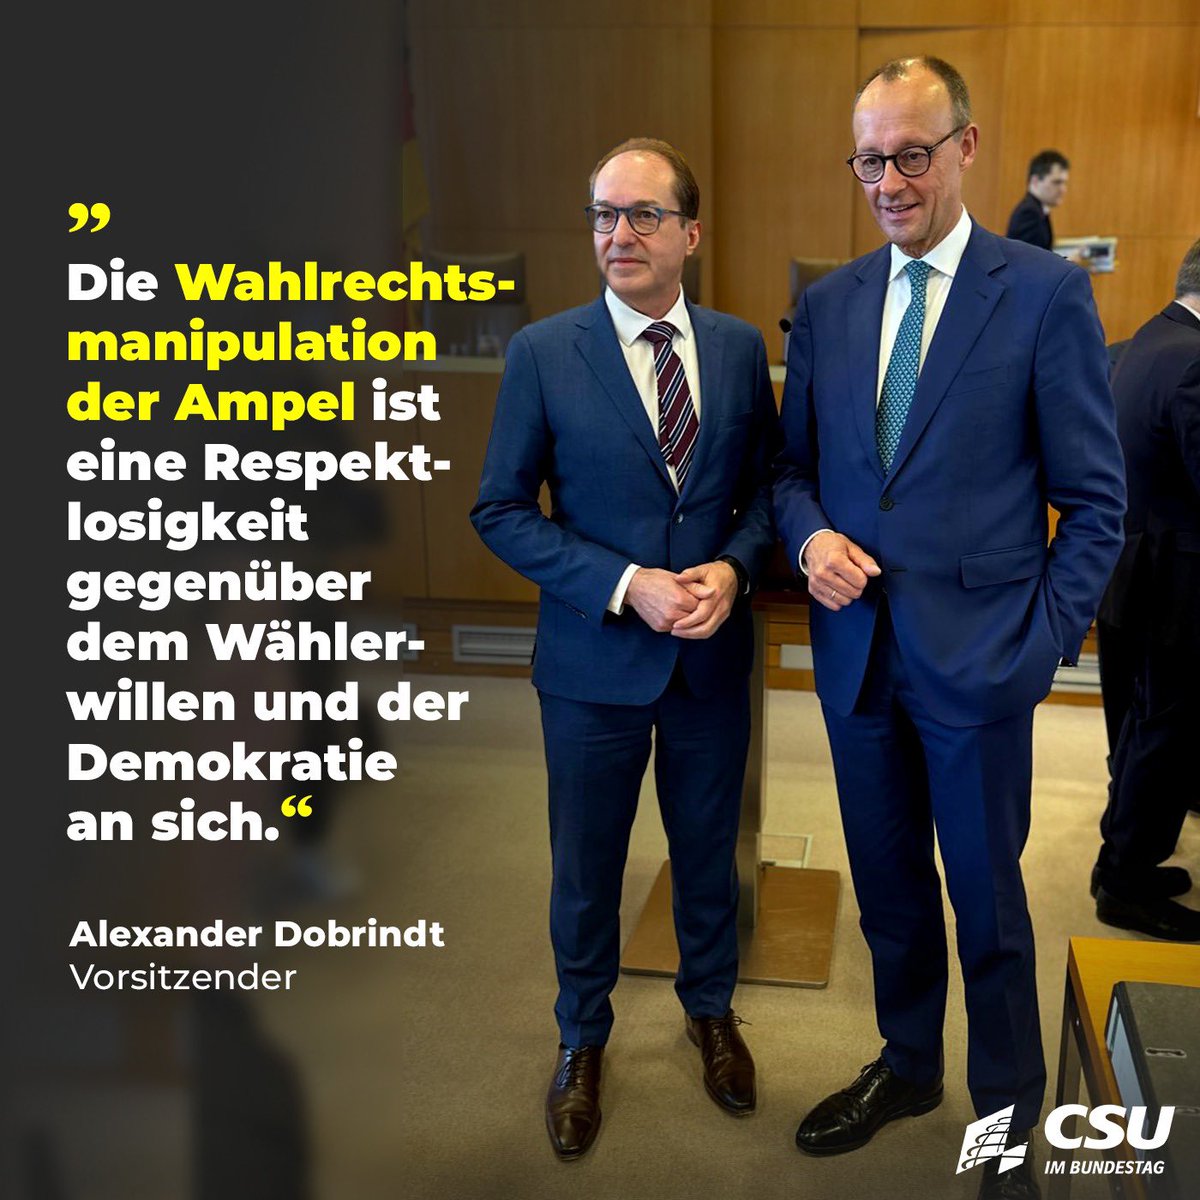 „Das Ampel-#Wahlrecht dient ausschließlich dem eigenen Machterhalt von SPD, Grünen und FDP. Diesem Gesetz fehlt schlichtweg der demokratische Anstand. Die Erststimme wird massiv entwertet und der Wählerwille in den Wahlkreisen ignoriert. Es ist bewusst darauf angelegt, zwei